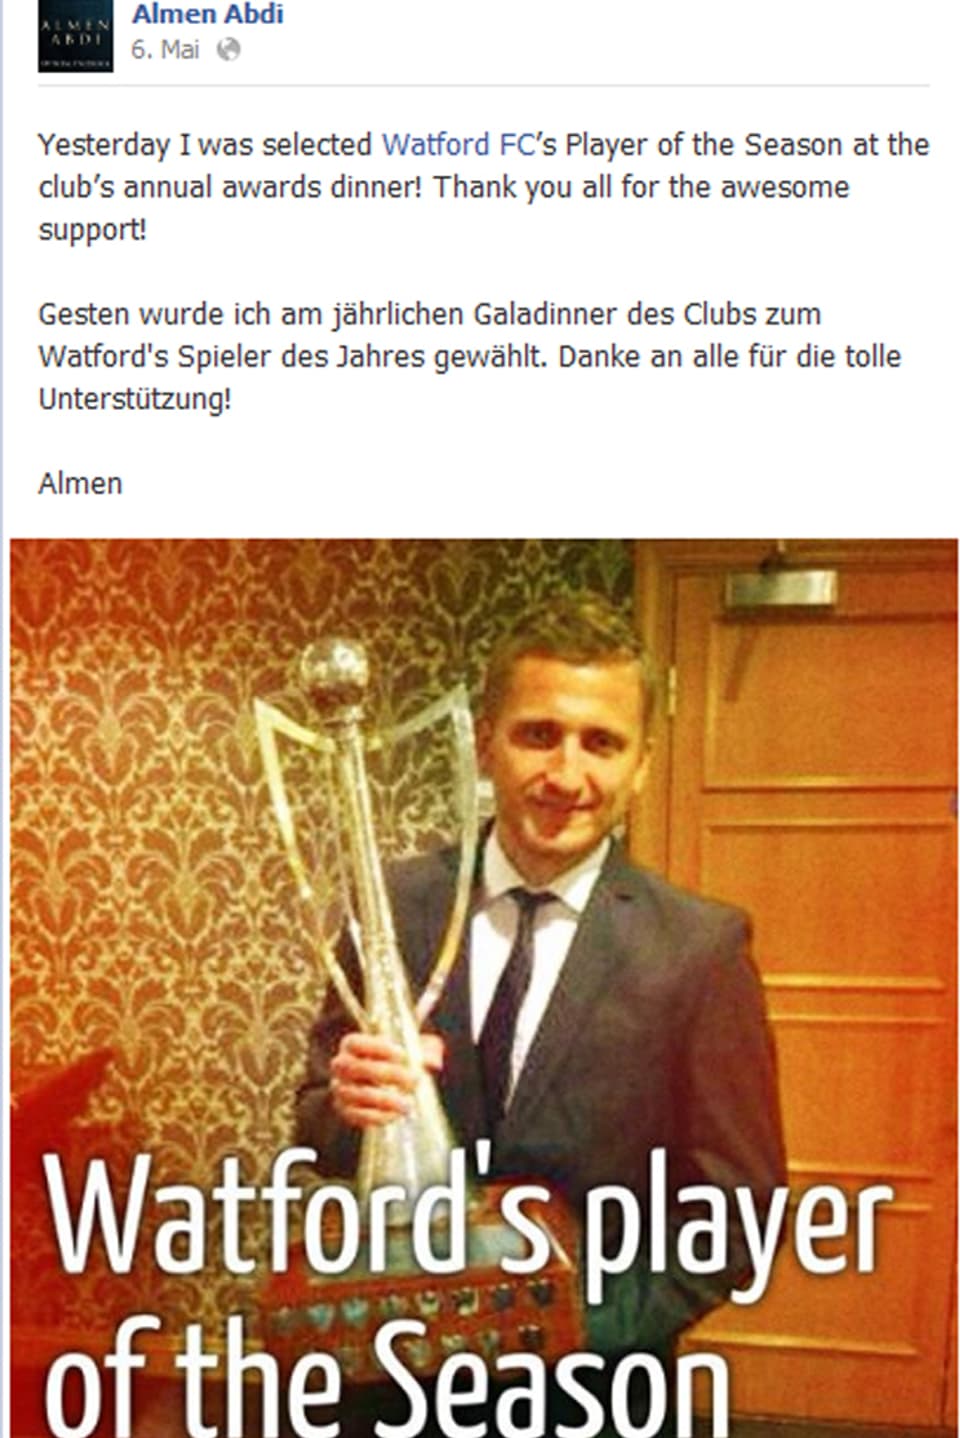 Abdis Facebook-Post nach der Wahl zu «Watford's player of the Season»